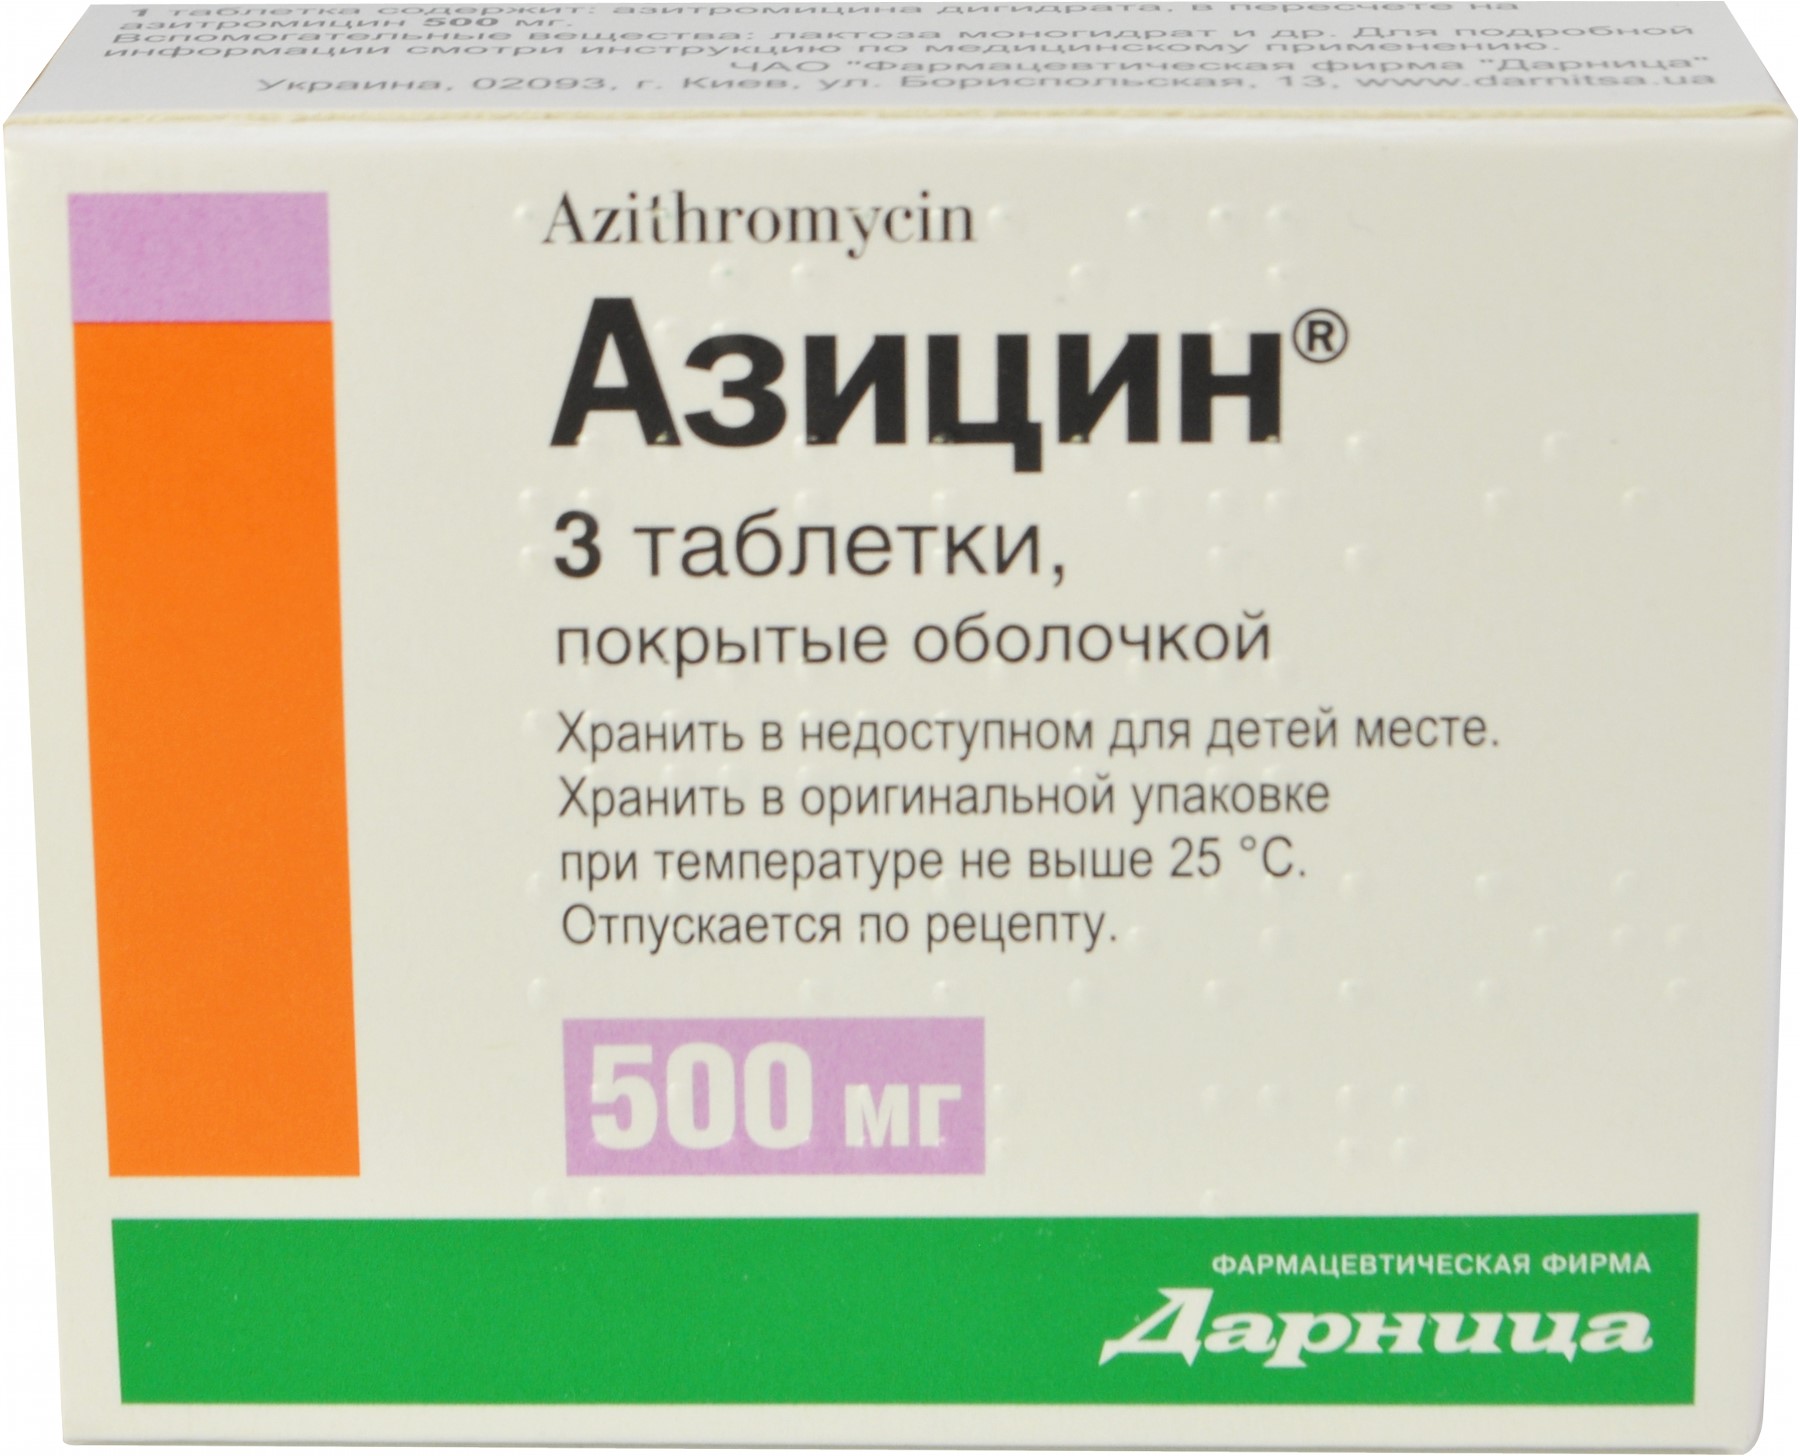 Таблетки Азитромицин: инструкция по применению для взрослых и детей, состав, дозировка, аналоги